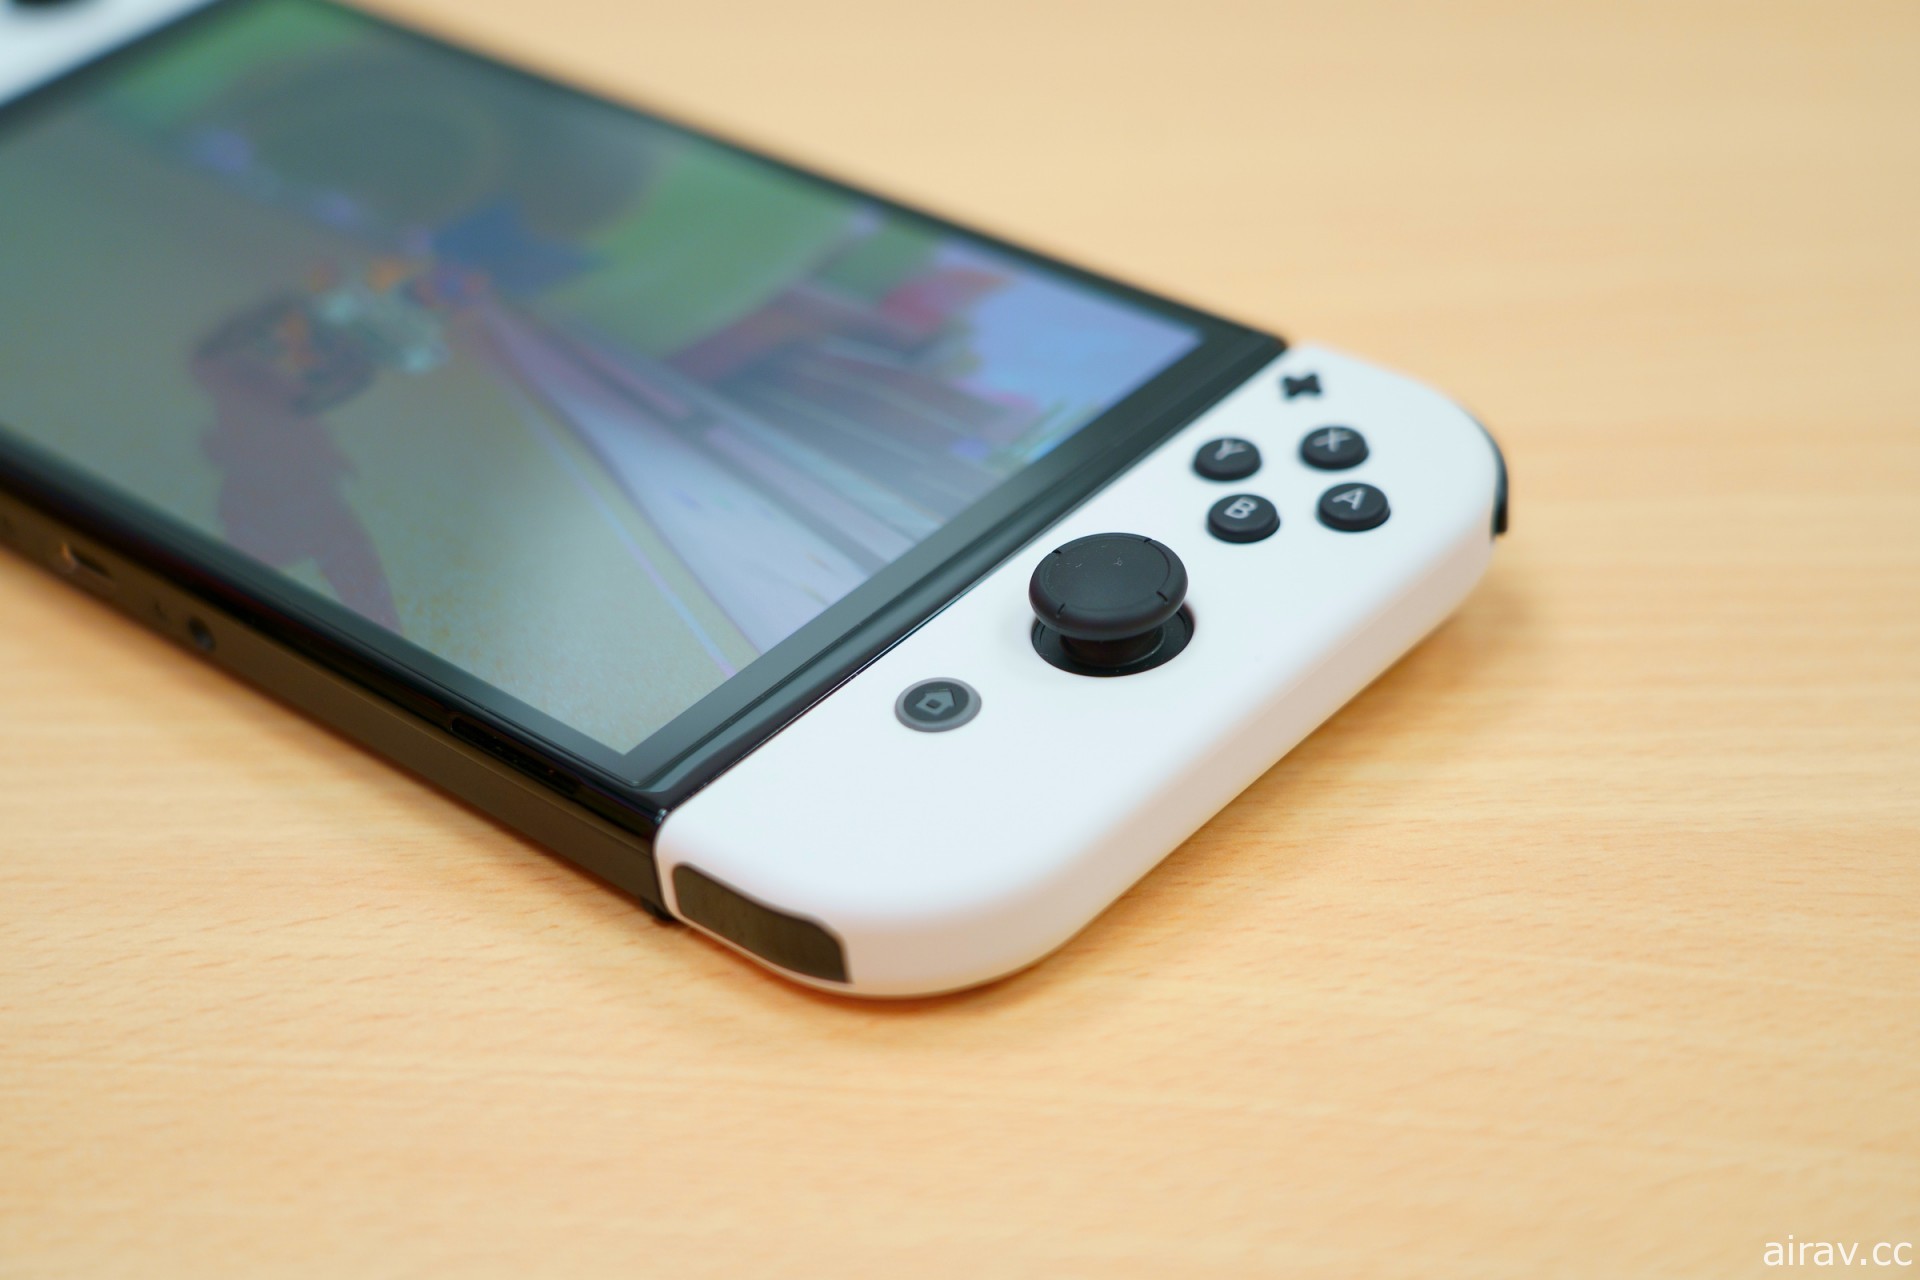 新型 Nintendo Switch OLED 主機搶先開箱報導 大幅提升攜帶遊玩體驗的正統進化